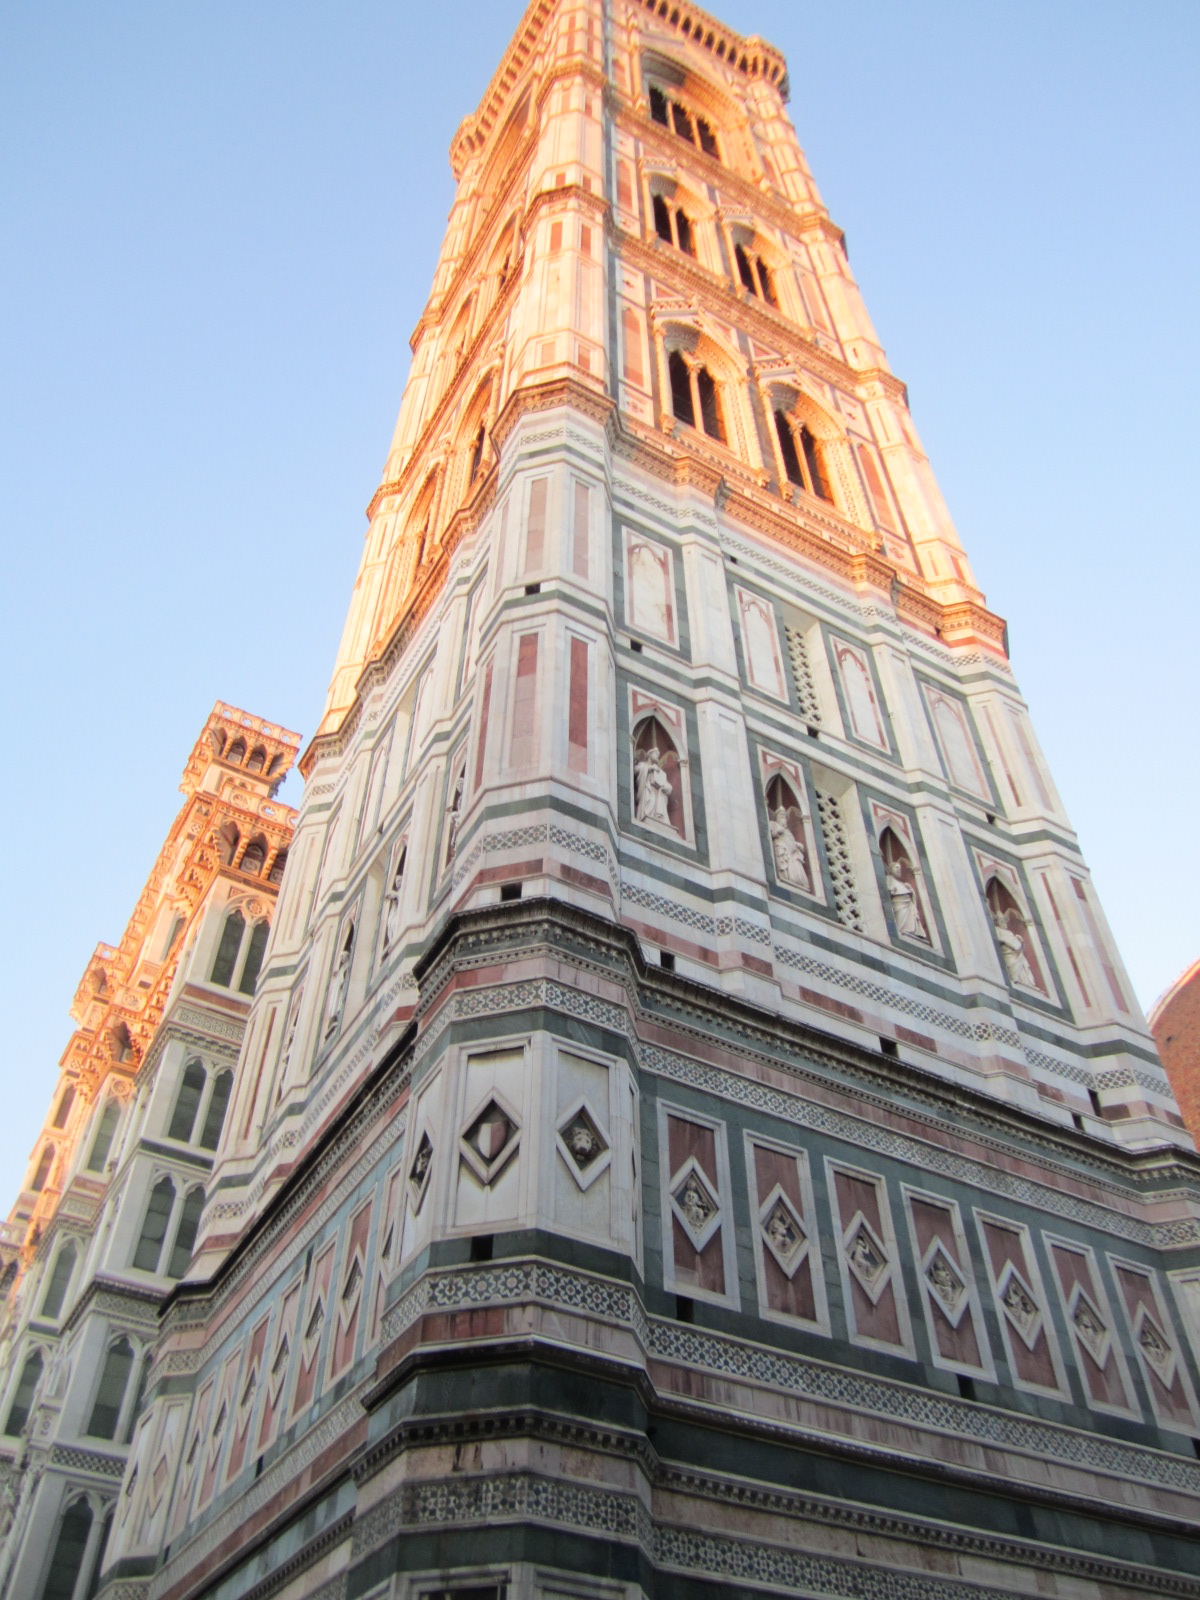 El campanario de Giotto